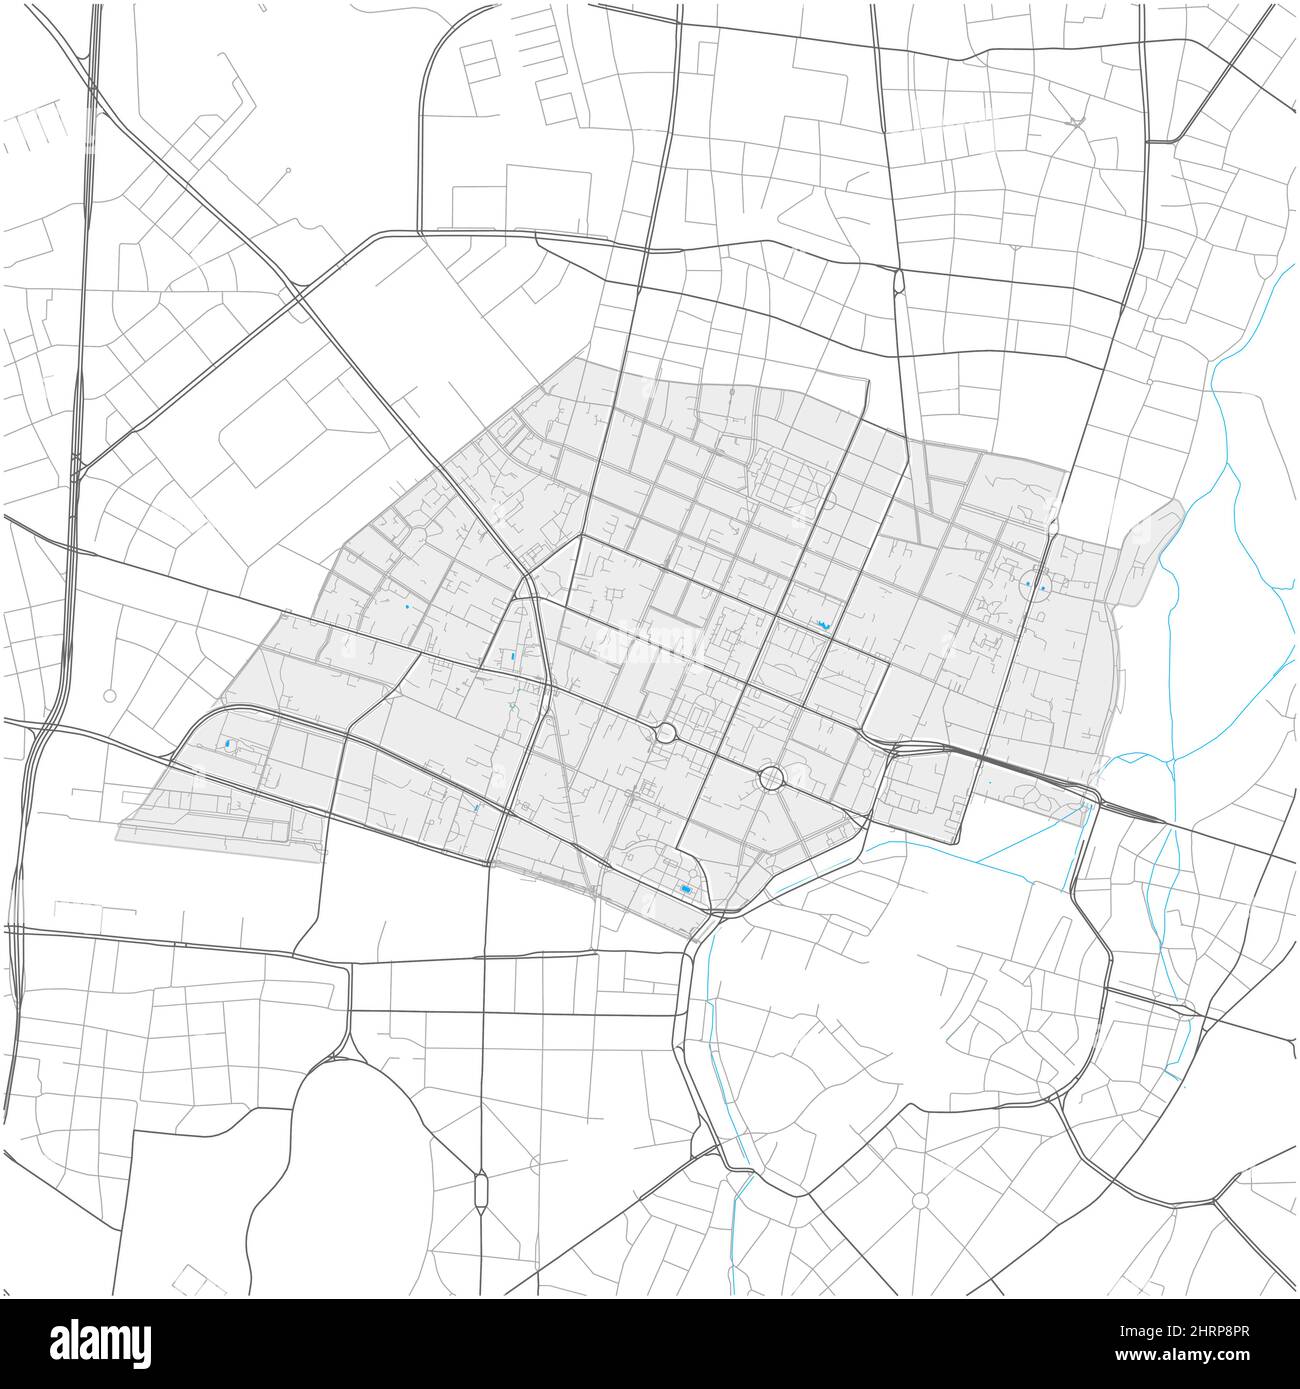 Maxvorstadt, München, DEUTSCHLAND, detailreiche Vektorkarte mit Stadtgrenzen und editierbaren Pfaden. Weiße Umrisse für Hauptstraßen. Viele kleinere Wege. Stock Vektor